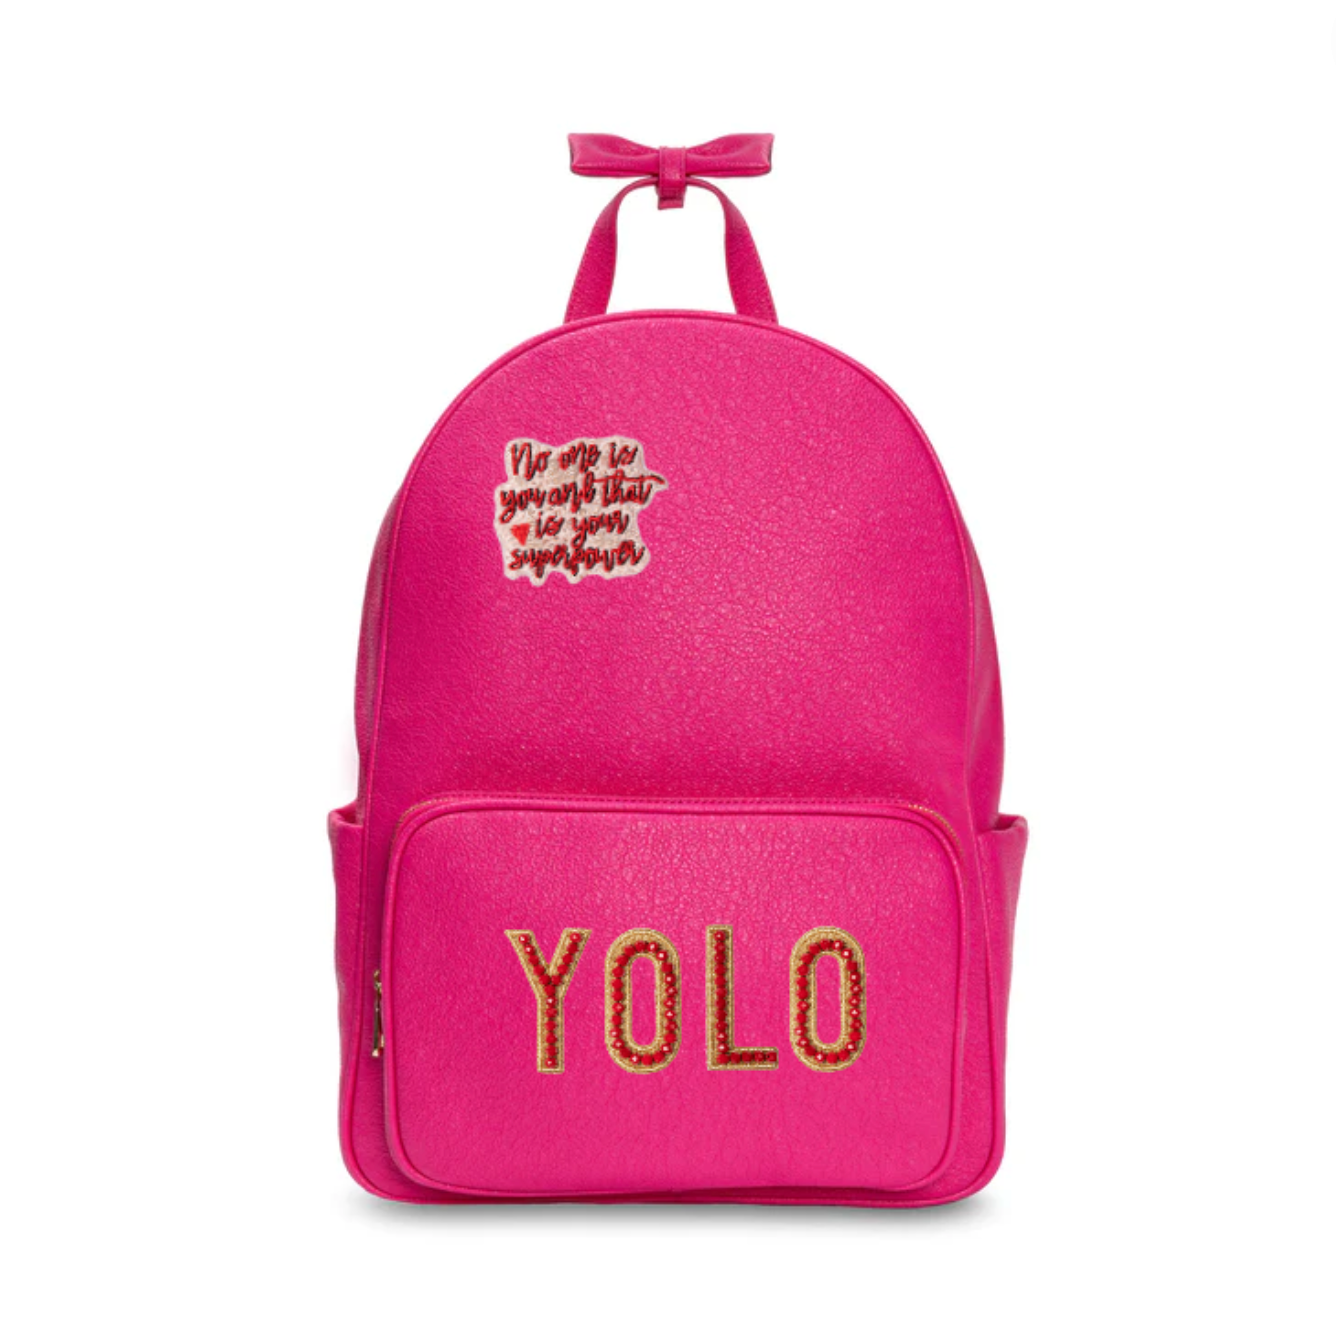 YOLO Backpack